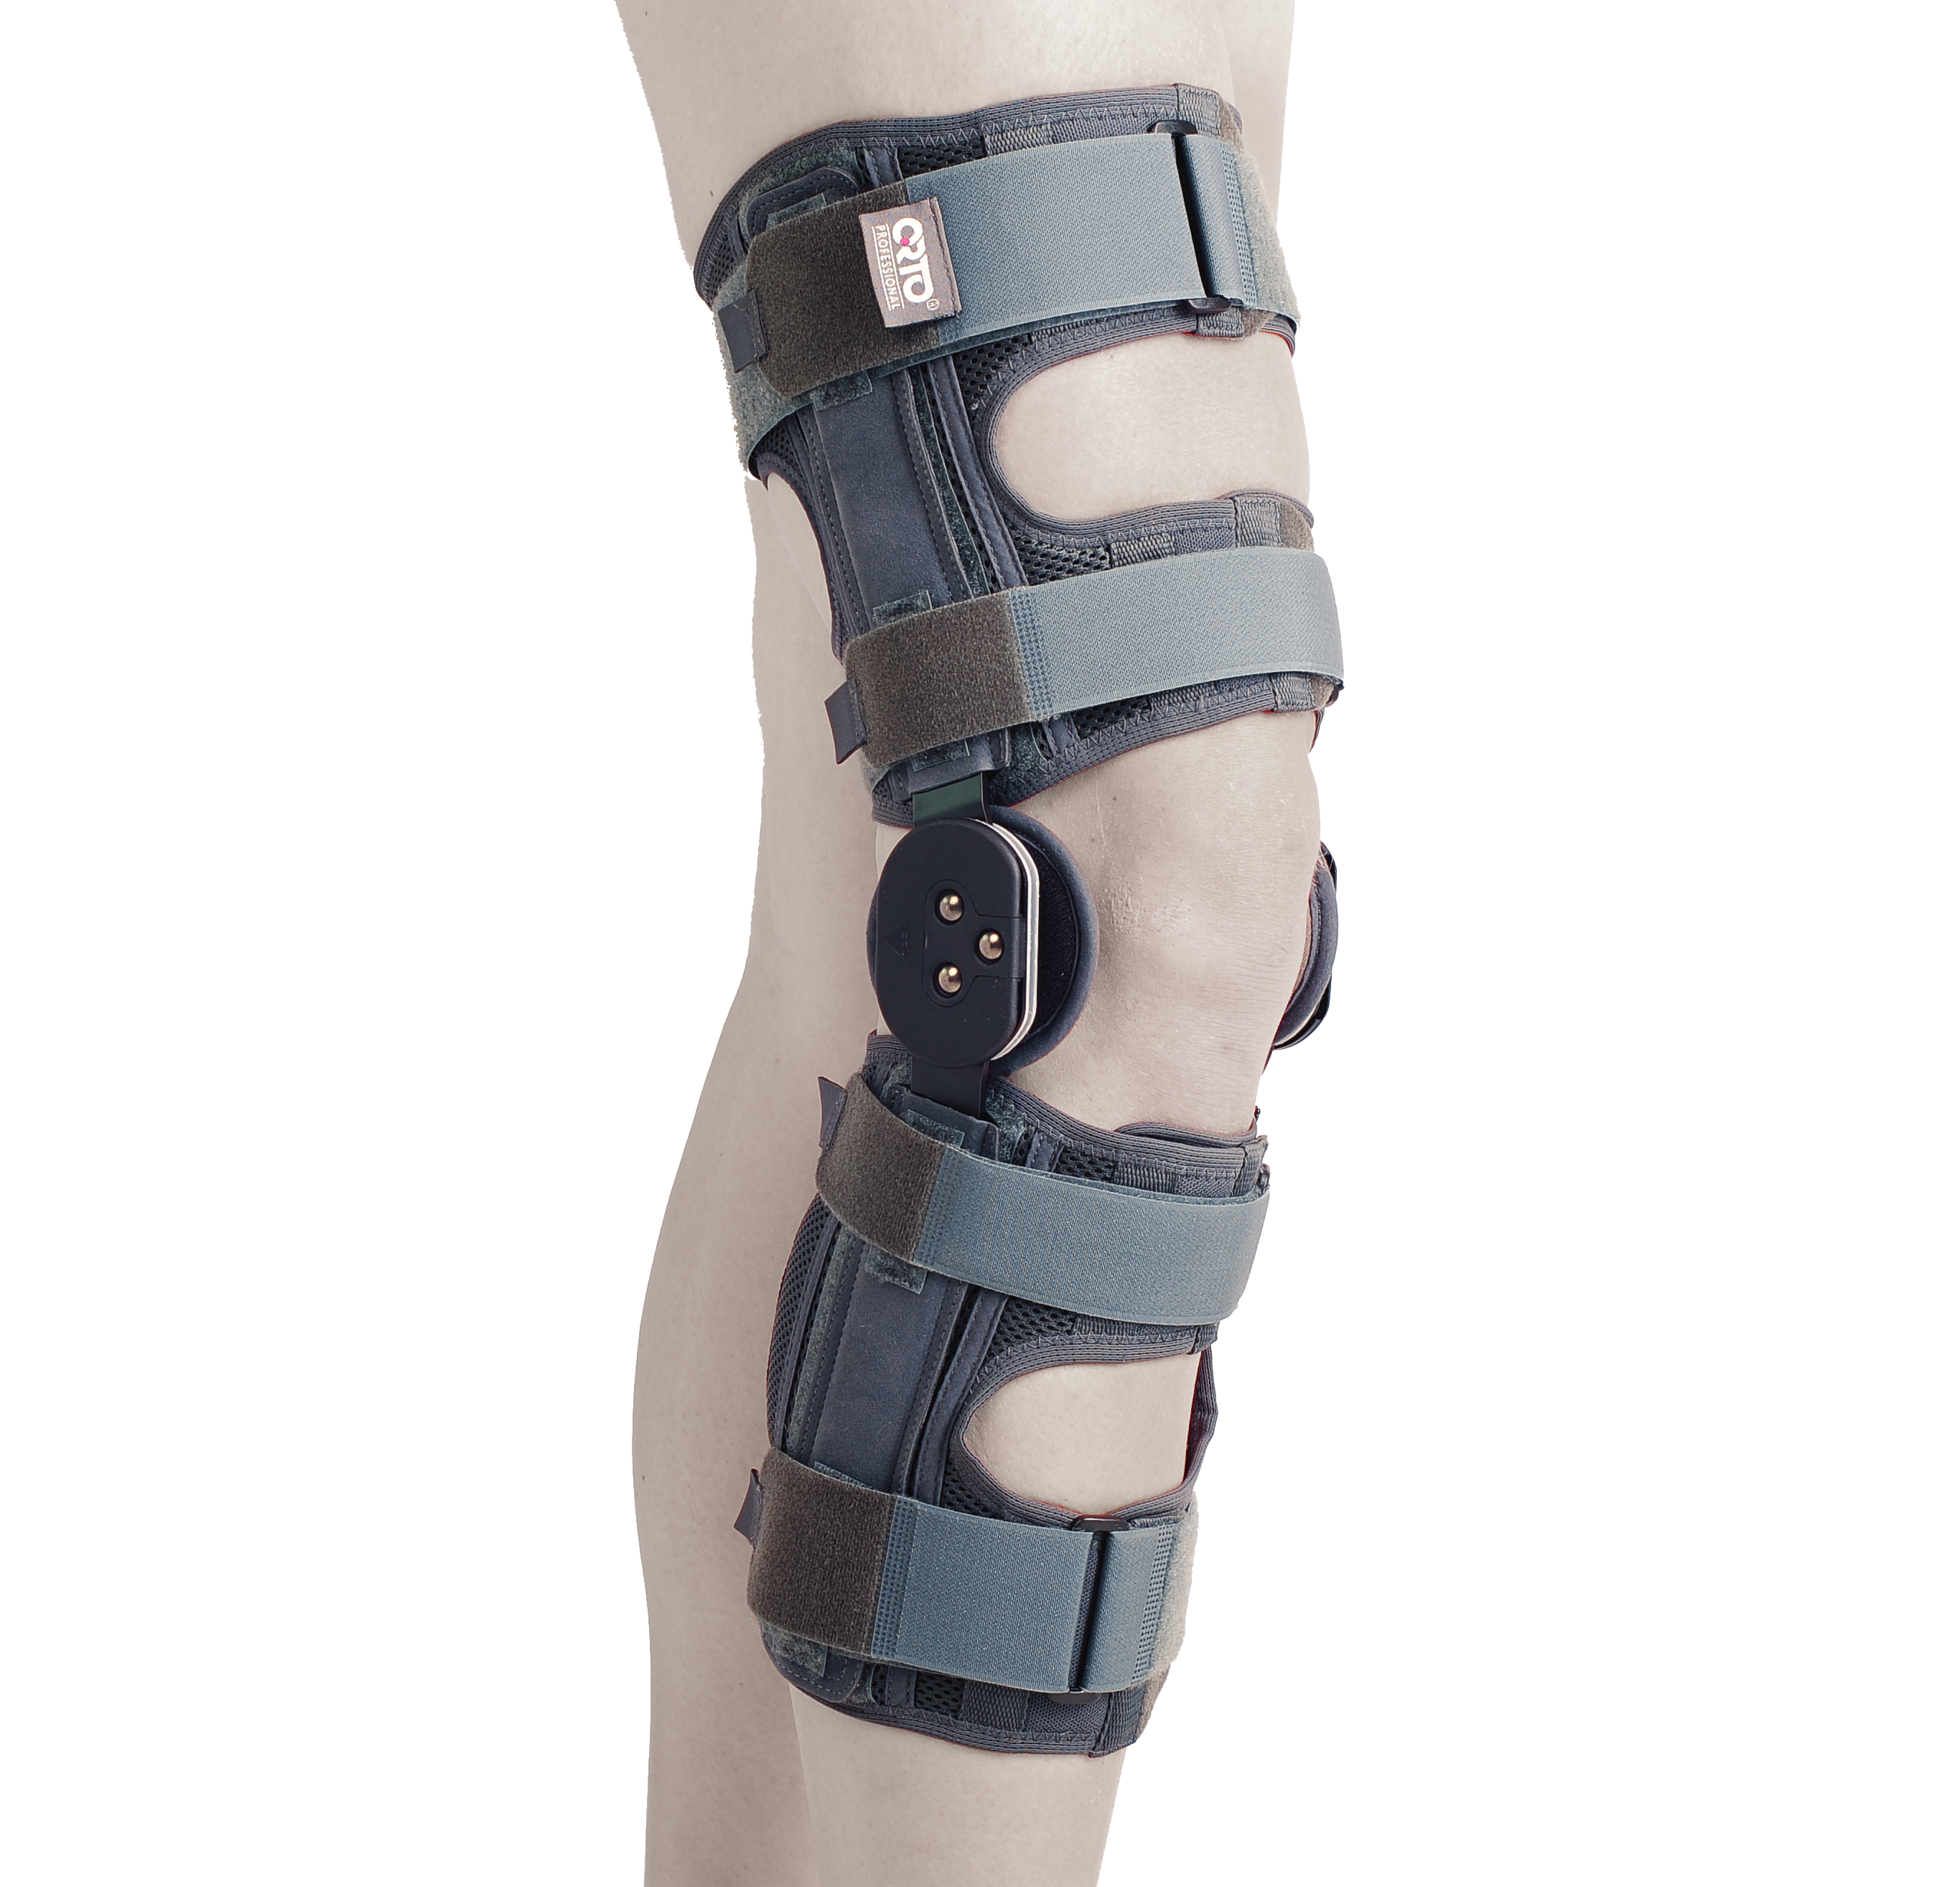 Бандаж ортопедический на коленный сустав Orto 558 AKN (S/M)  - купить со скидкой